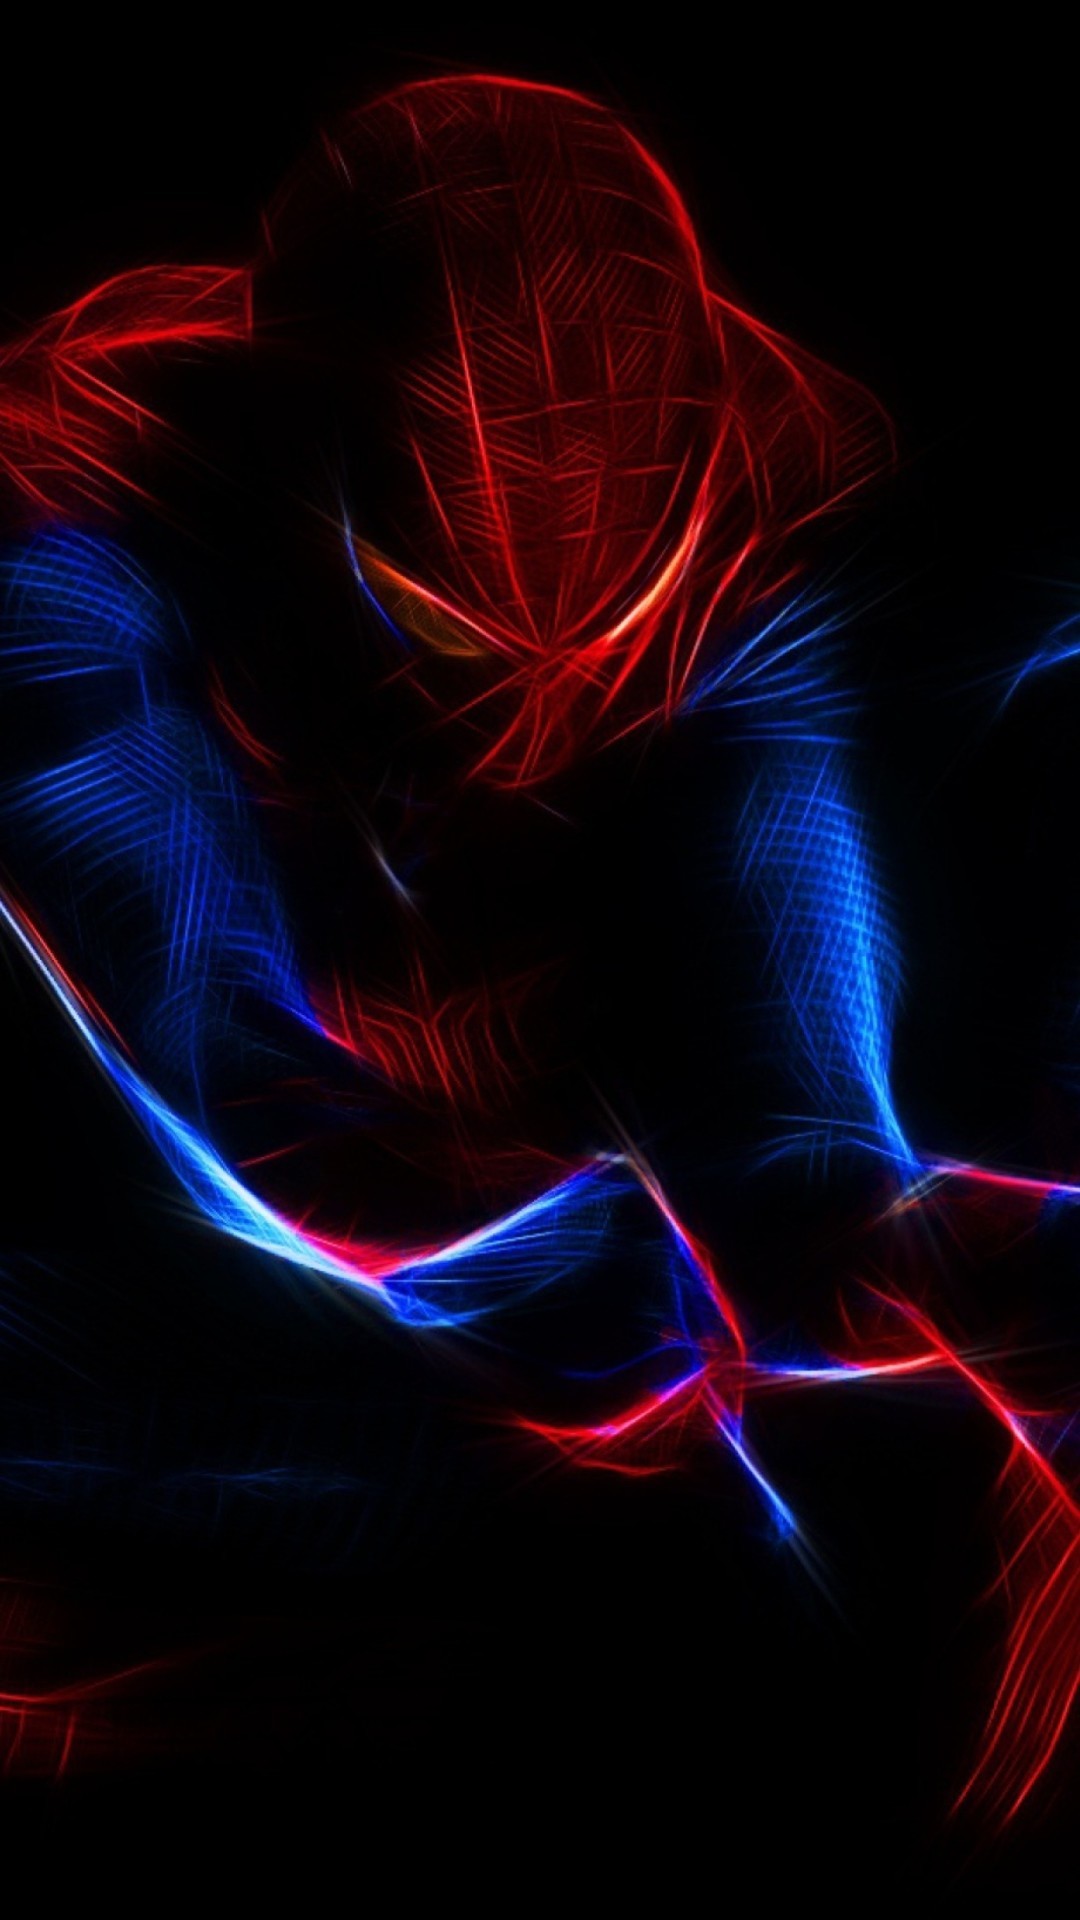 spiderman wallpaper iphone,rot,blau,elektrisches blau,licht,grafikdesign